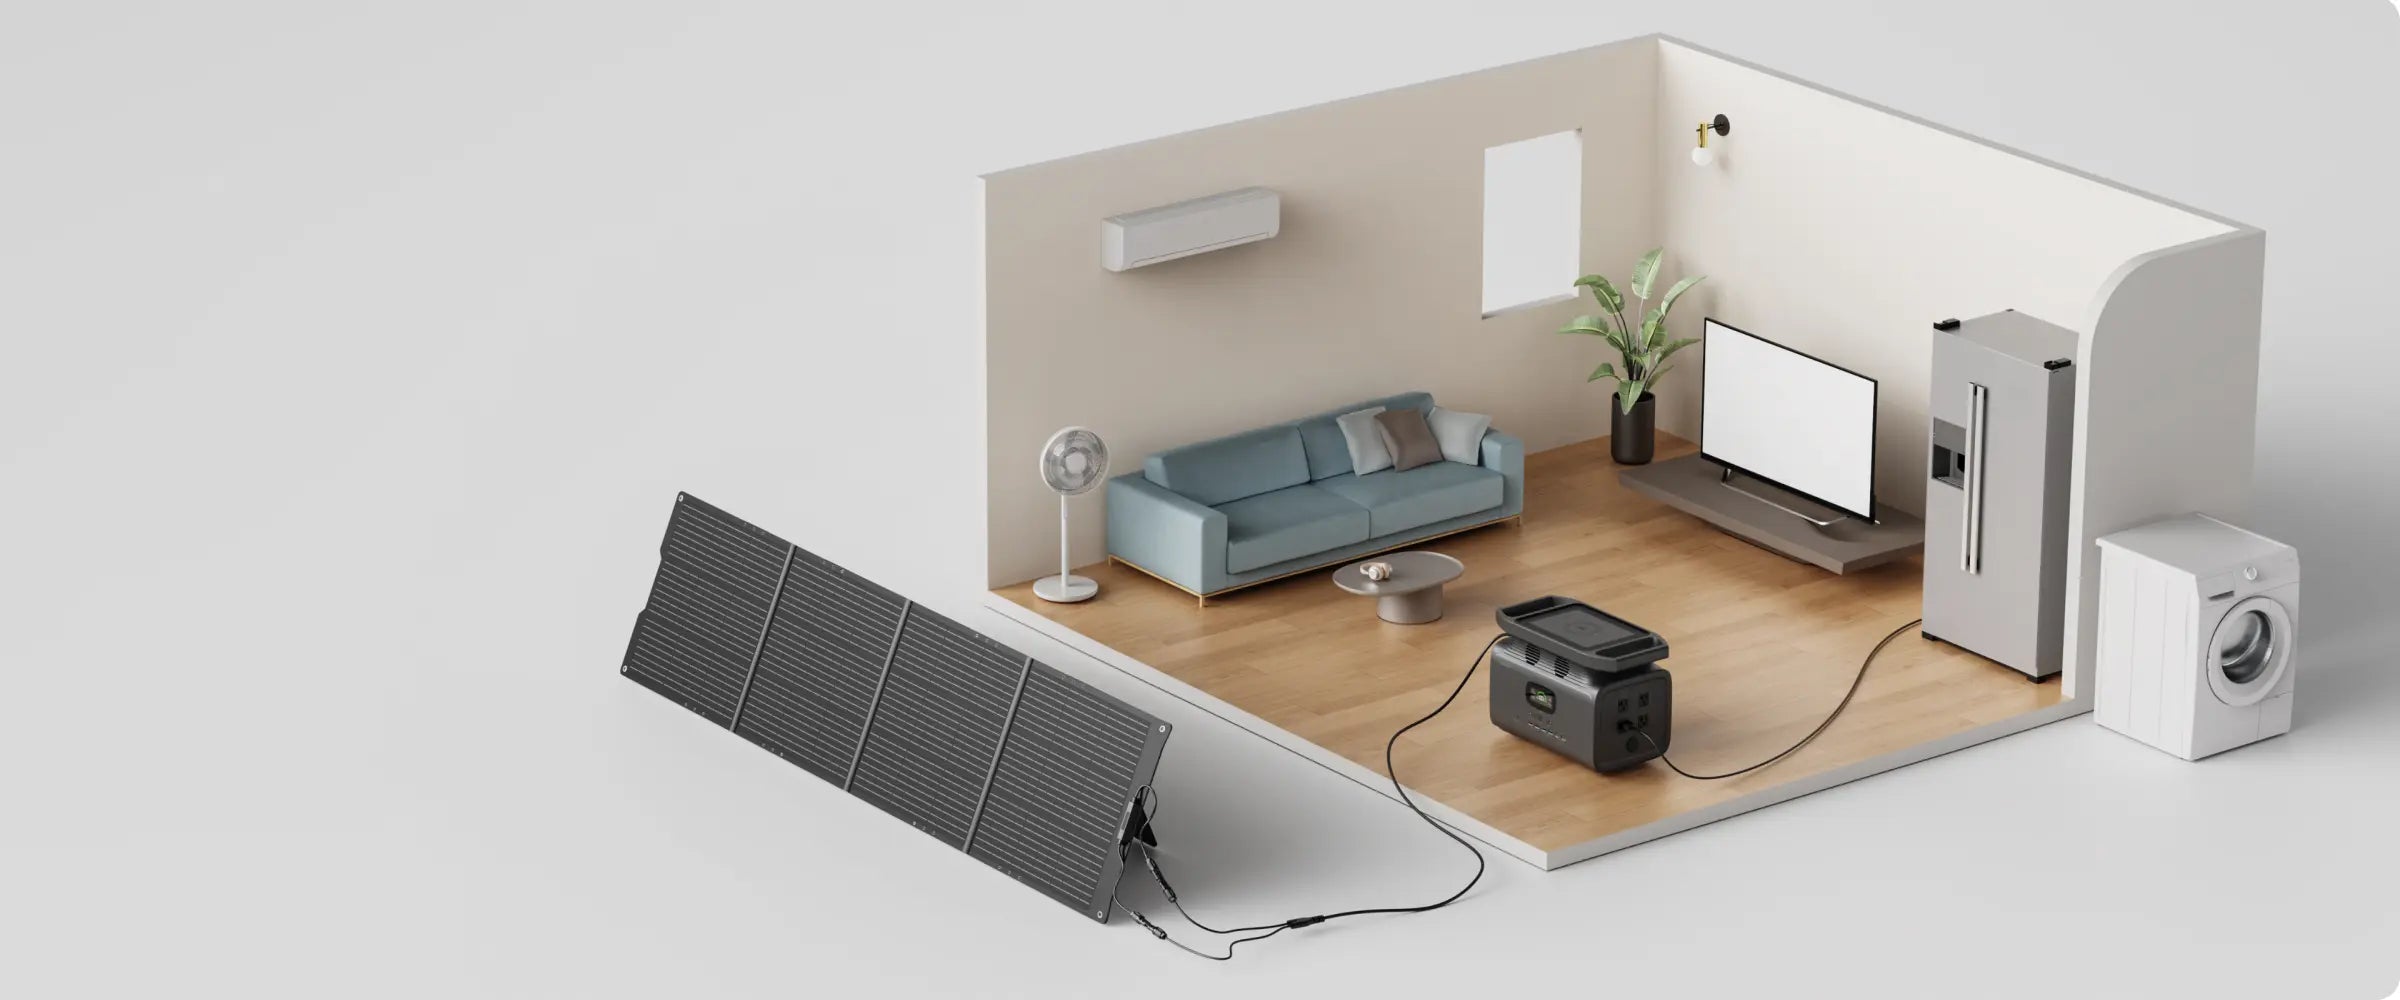 solar generator for house - Growatt